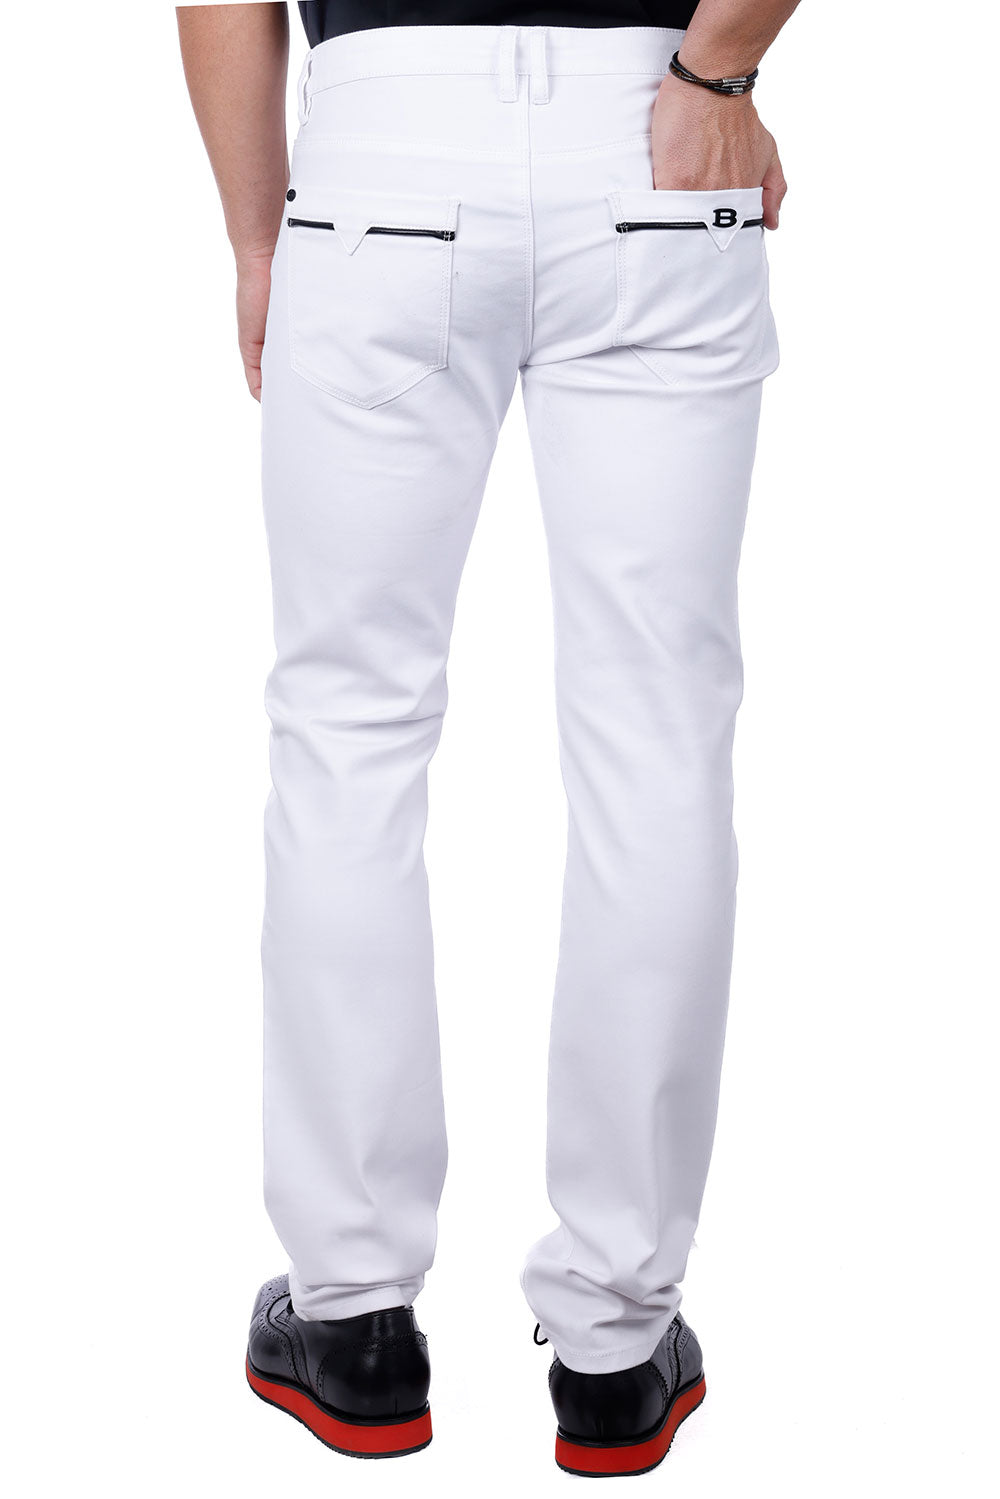 Barabas Men's Slim Fit Solid Color Plain Premium Jeans 3CPW32 White